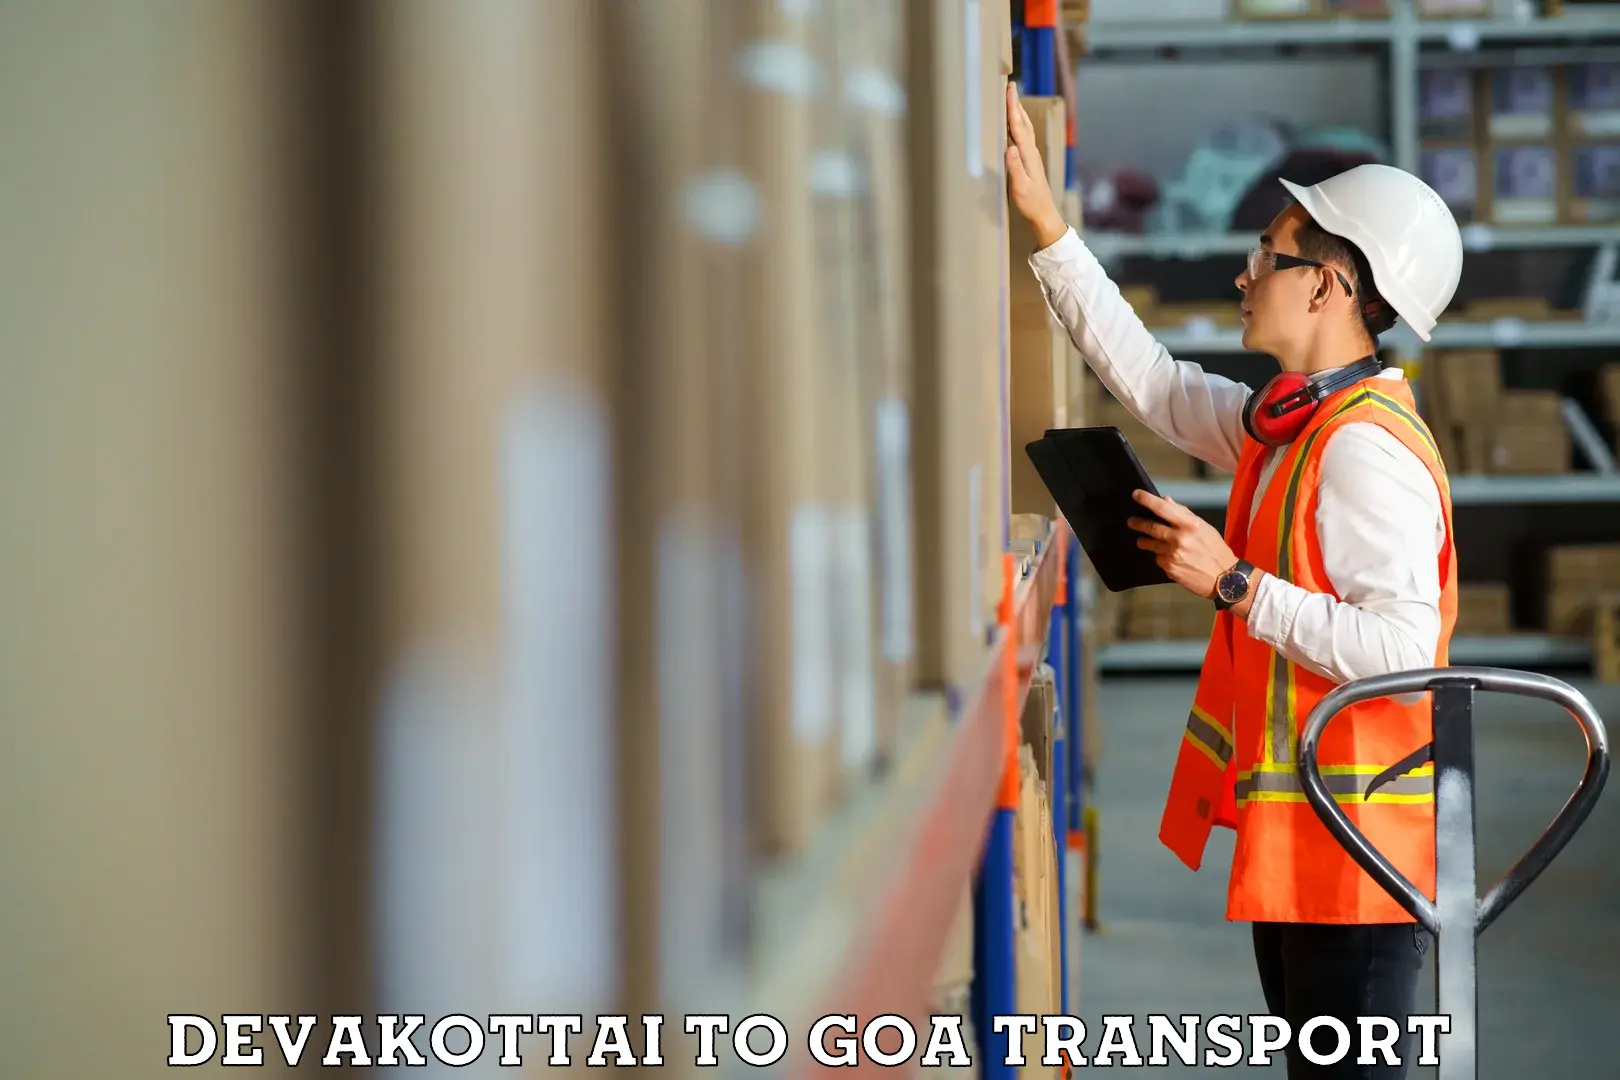 Container transportation services Devakottai to Goa